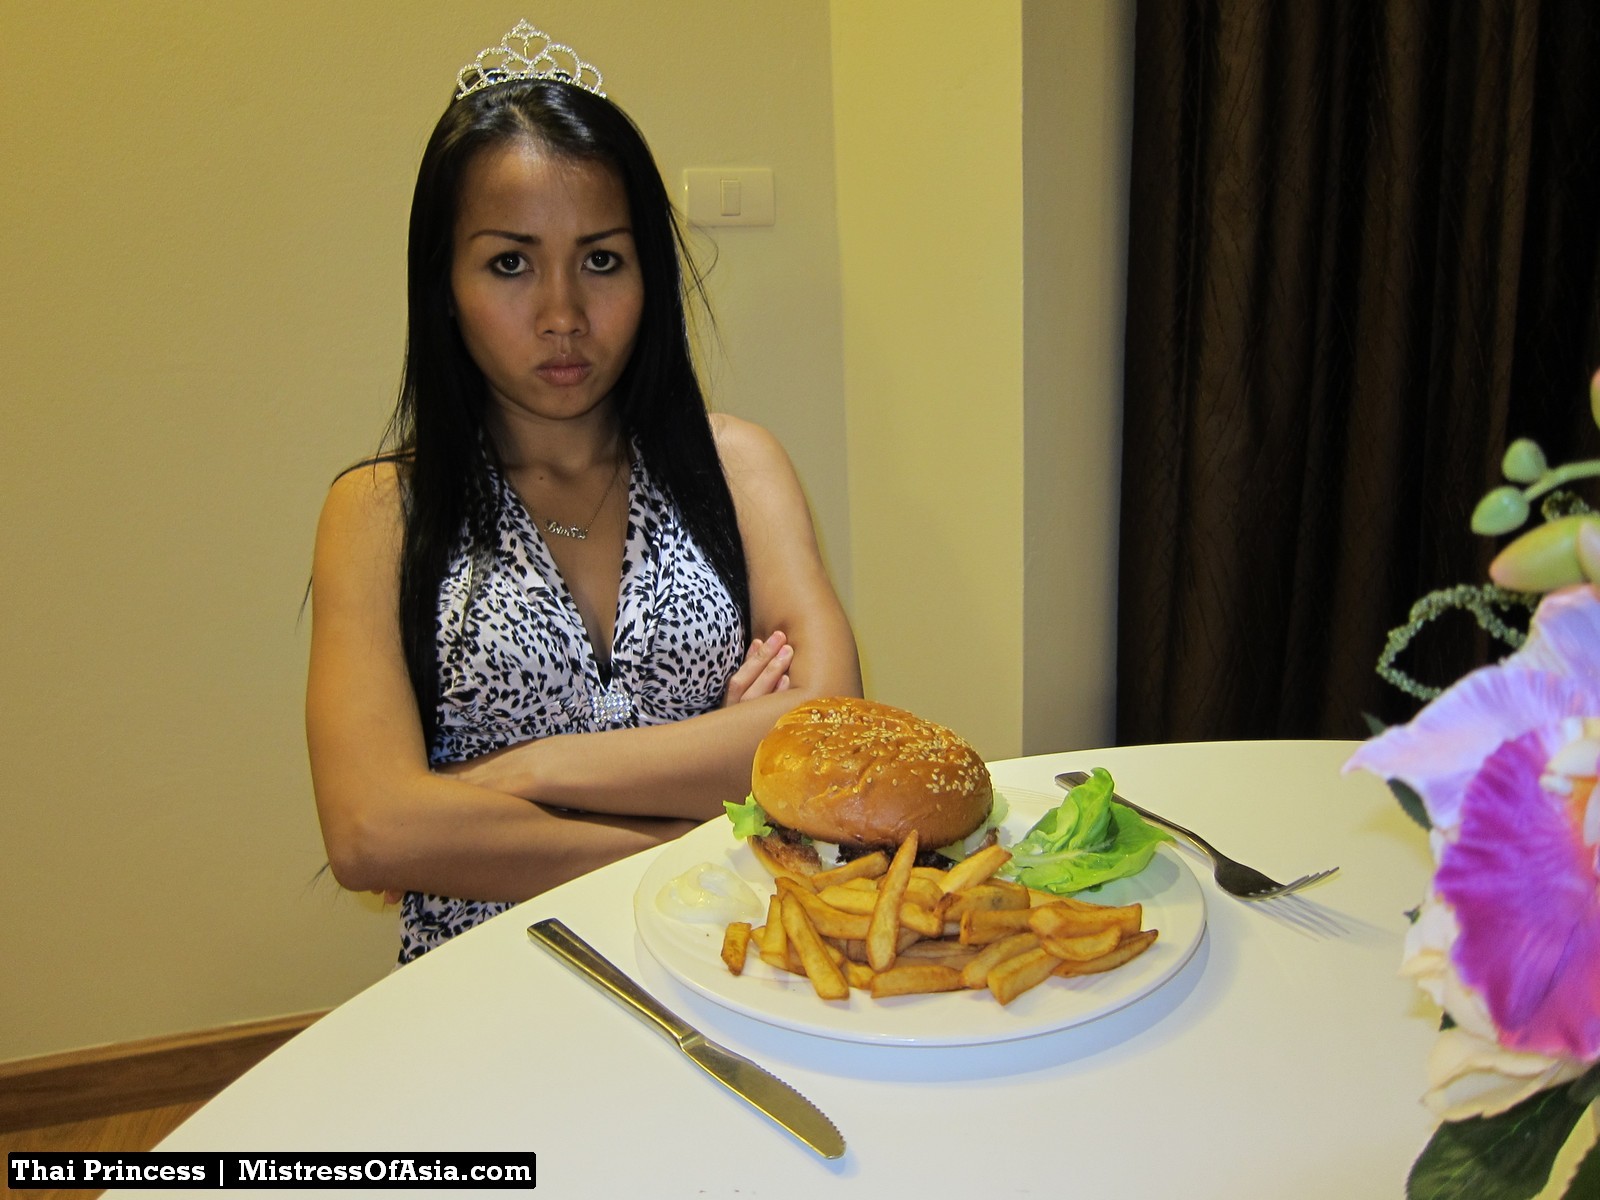 Principessa tailandese che mangia hamburger
 #69740269